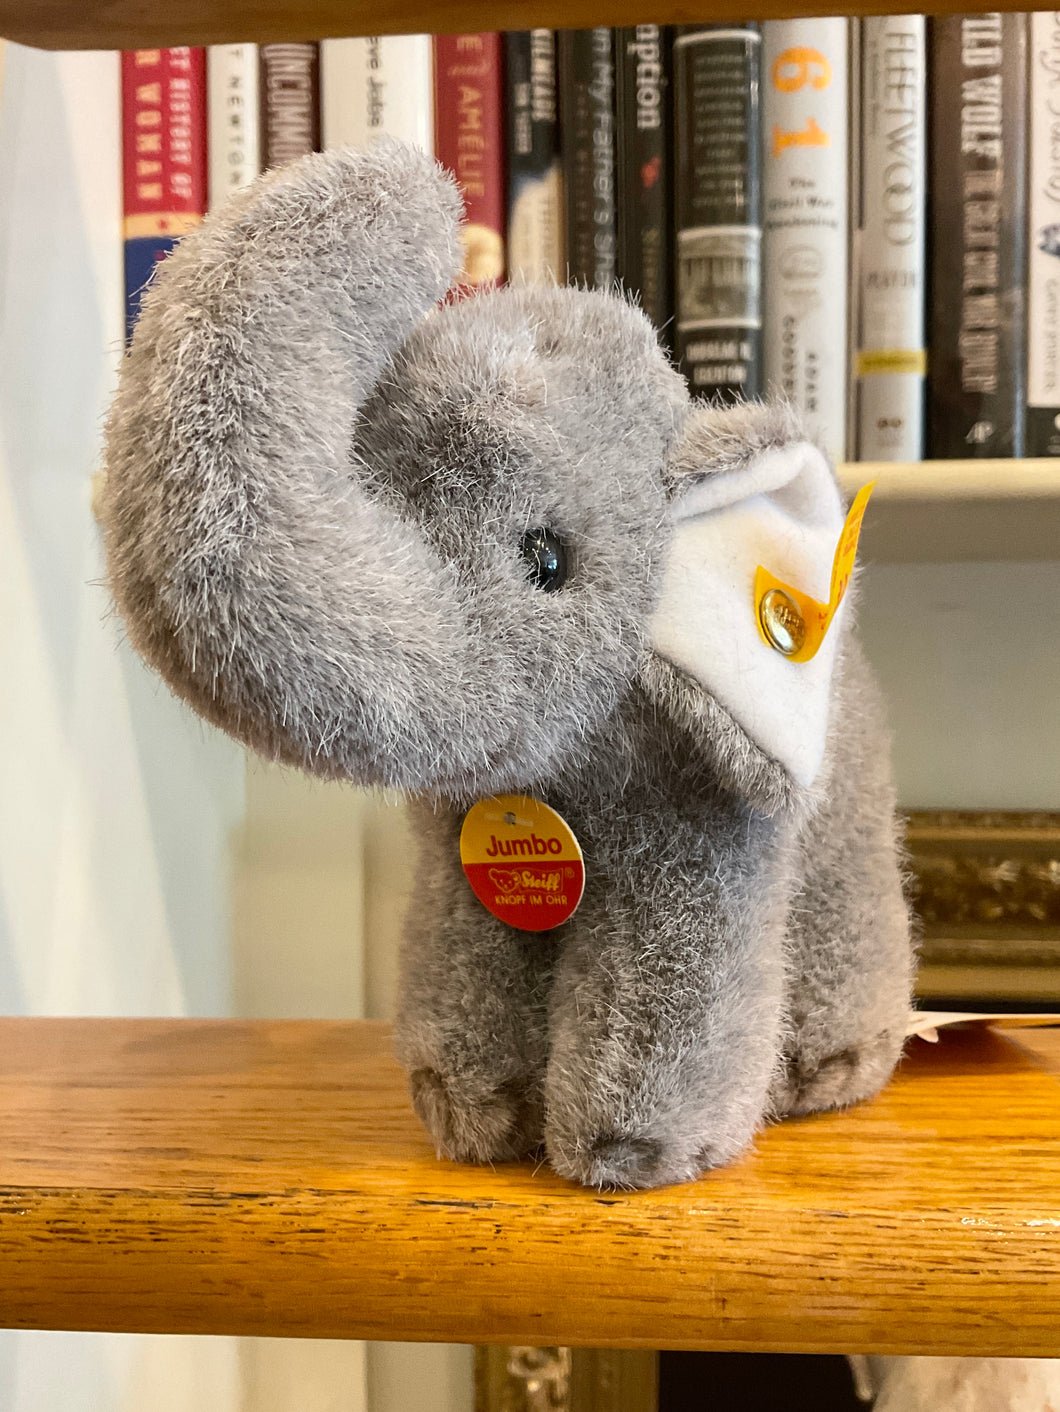 Miniature STEIFF “Jumbo” the Elephant